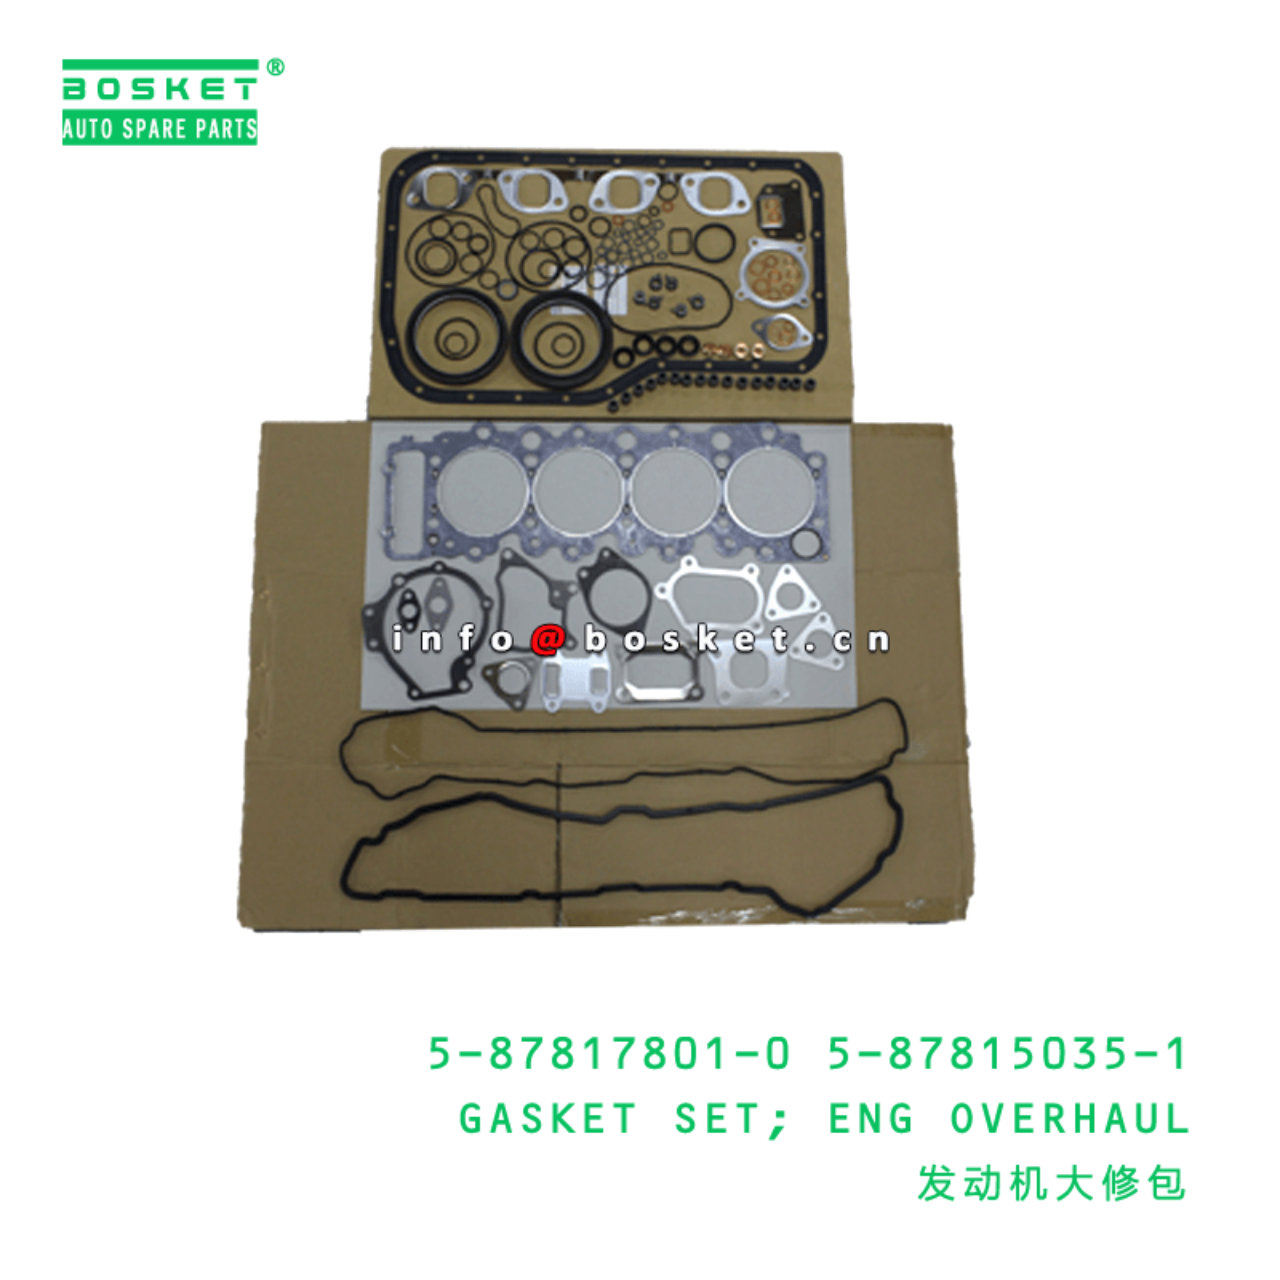 5-87817801-0 5-87815035-1 Engine Overhaul Gasket Set 5878178010 5878150351 Suitable for ISUZU XD 4HK